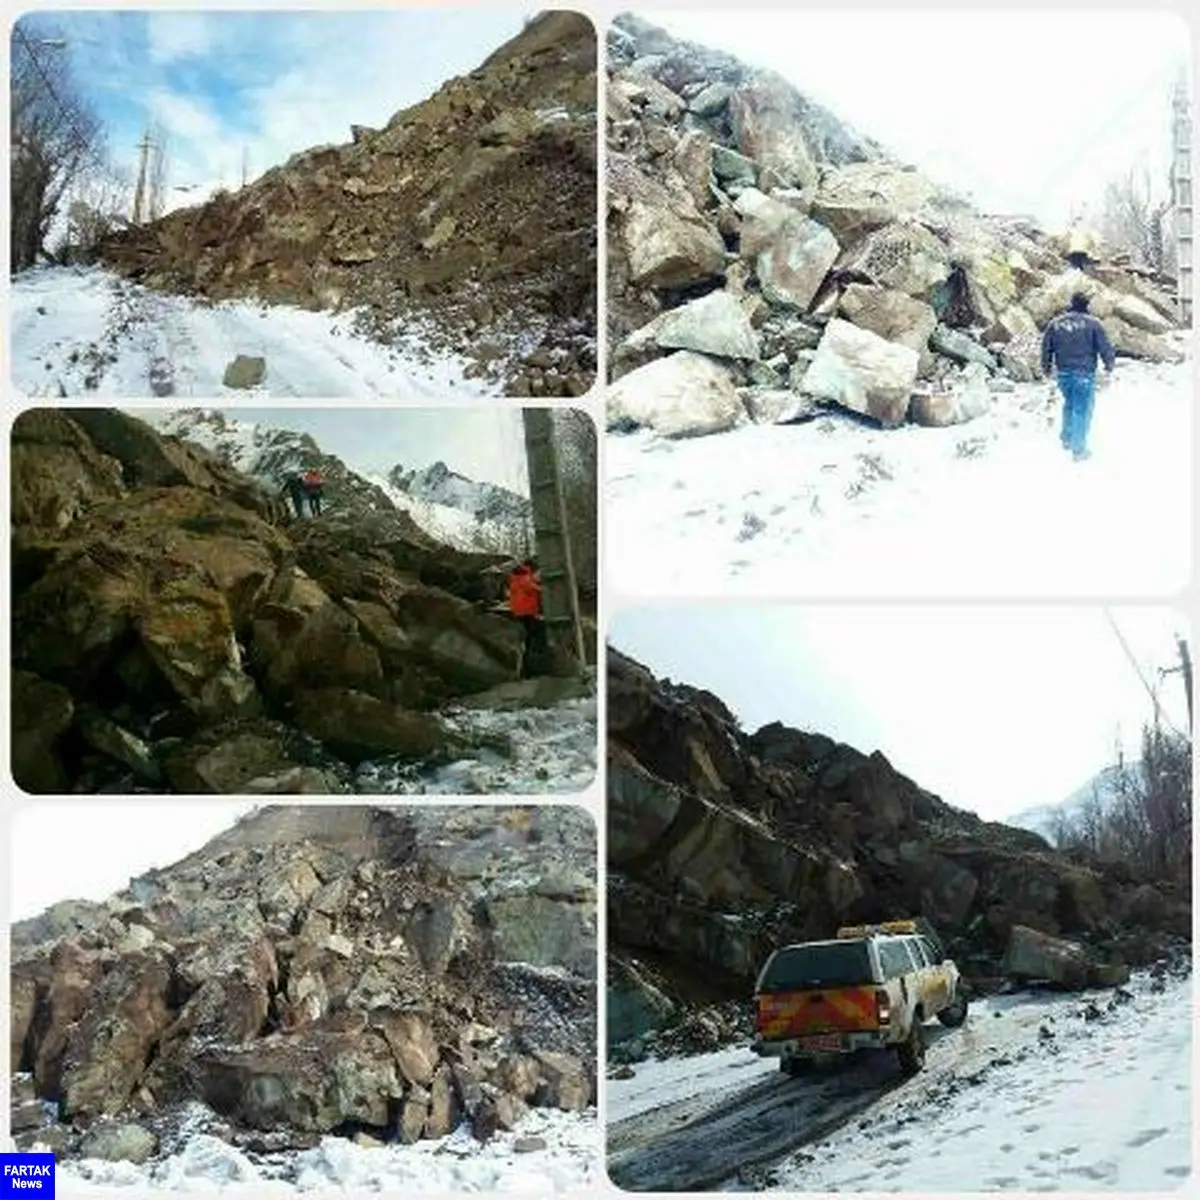  ریزش کوه راه سه روستا را در طالقان مسدود کرد